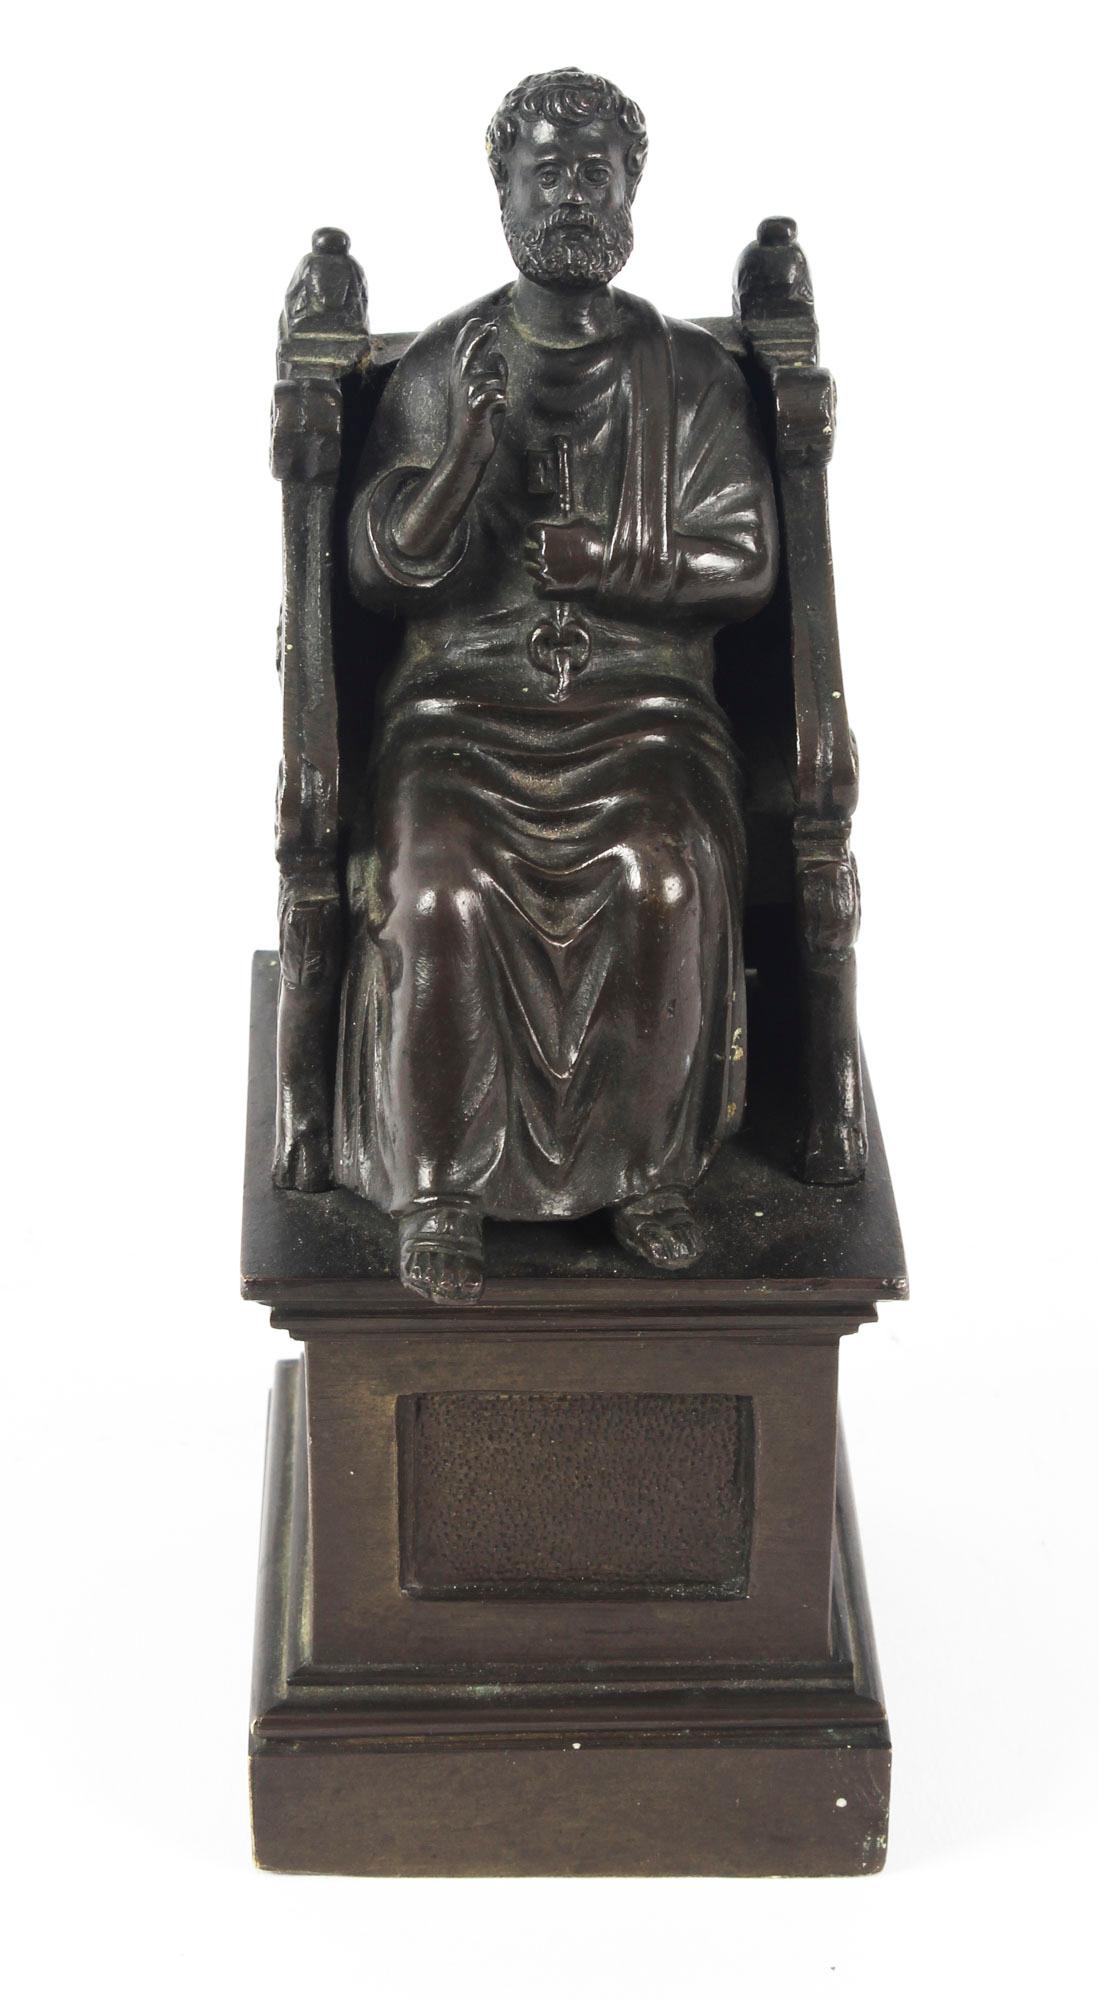 Superbe sculpture italienne ancienne en bronze patiné Grand Tour représentant Saint Pierre assis sur un trône en bronze, datant d'environ 1880.

Cette sculpture en bronze patiné de saint Pierre est d'après l'original d'Arnolfo di Cambio